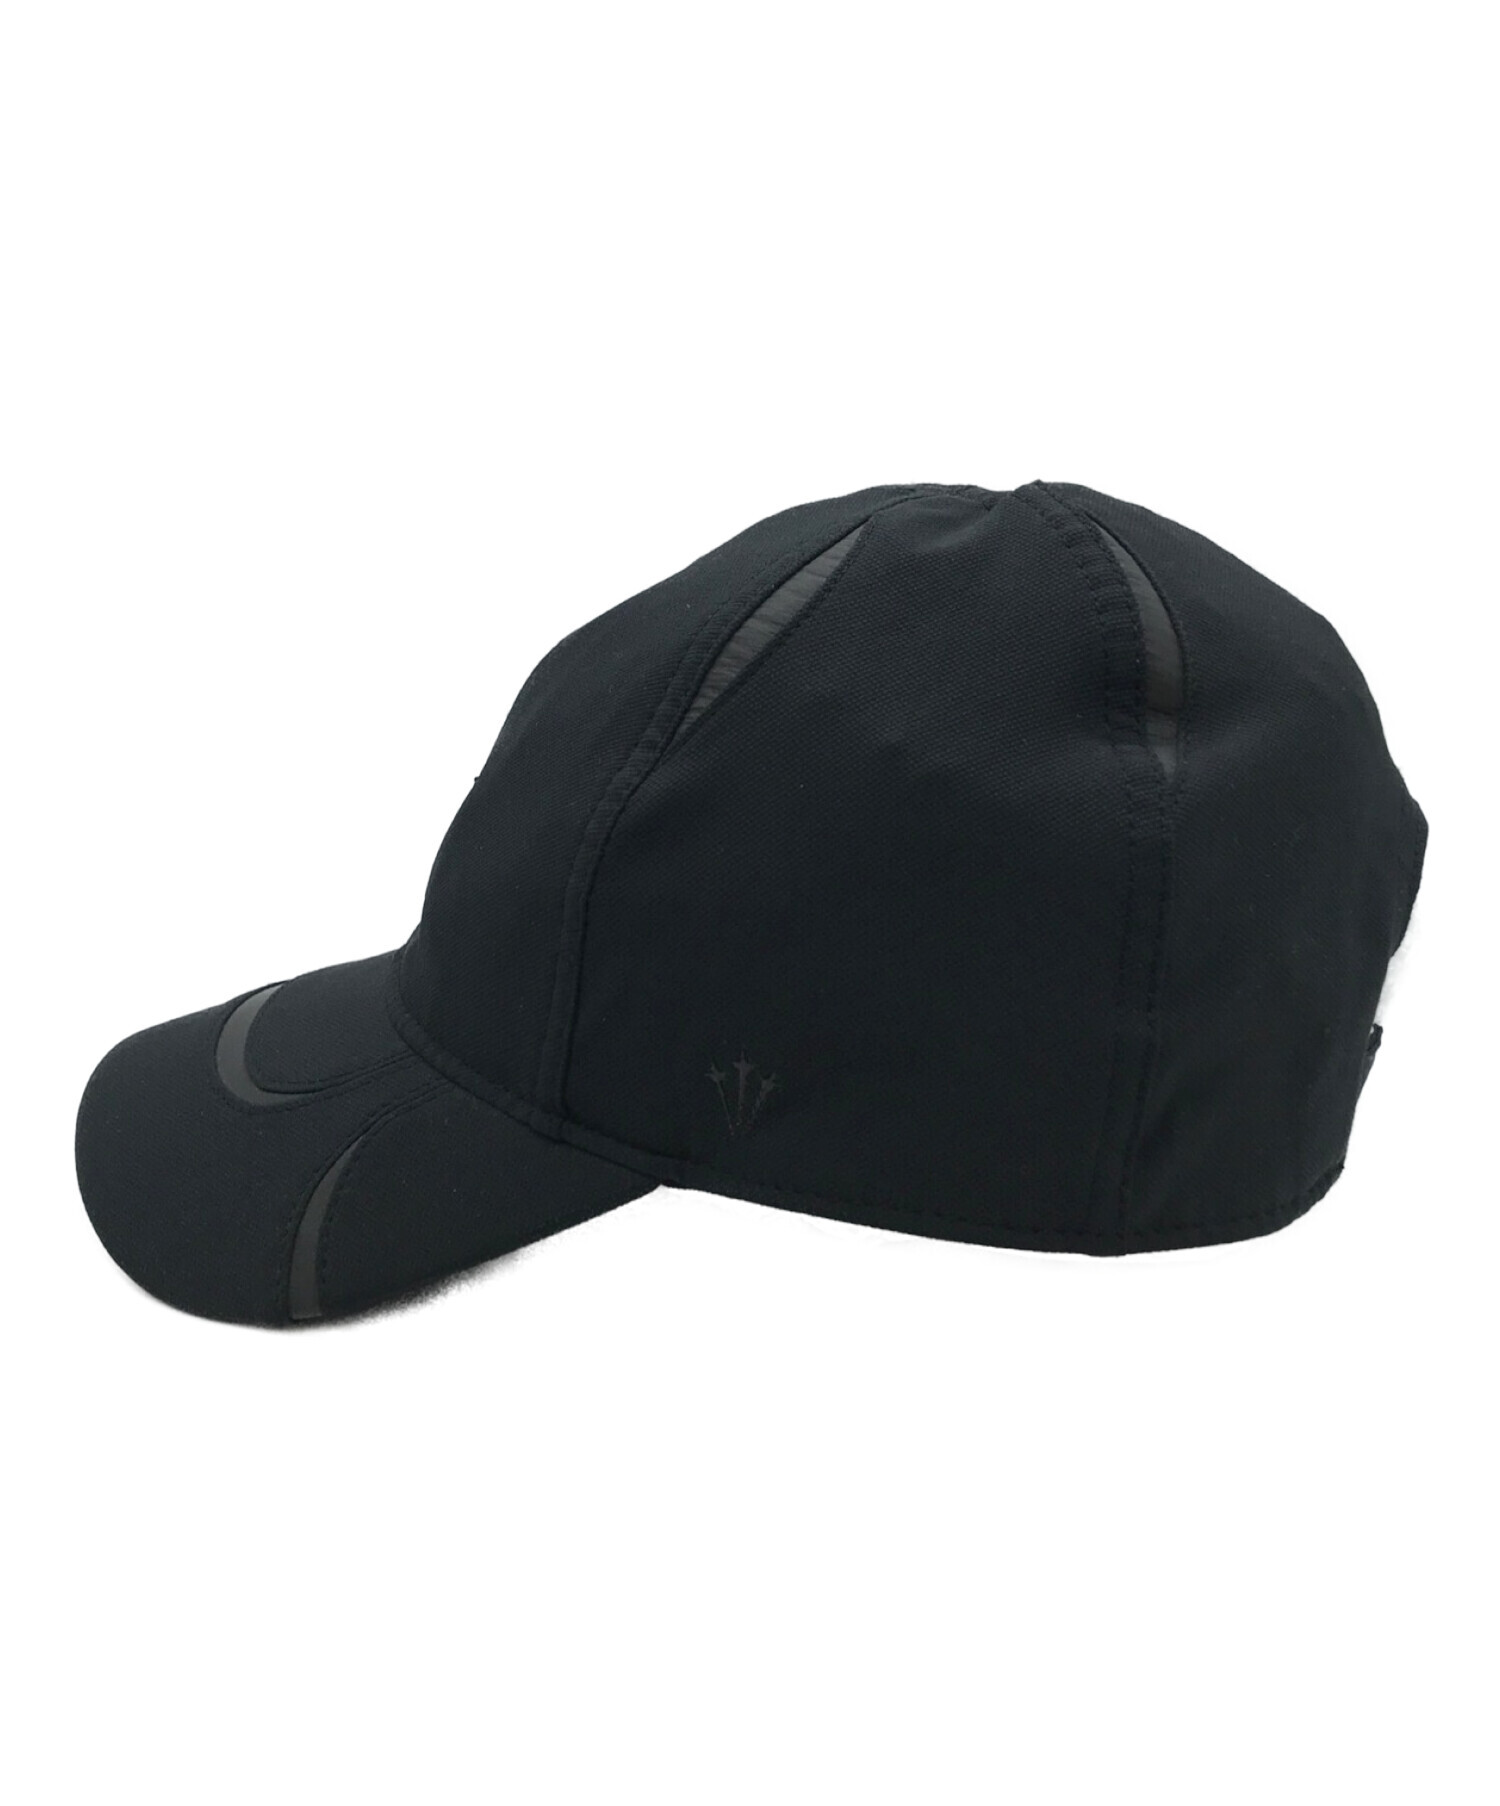 ドレイク × ナイキ ノクタ Nike NOCTA ブラック キャップ cap帽子